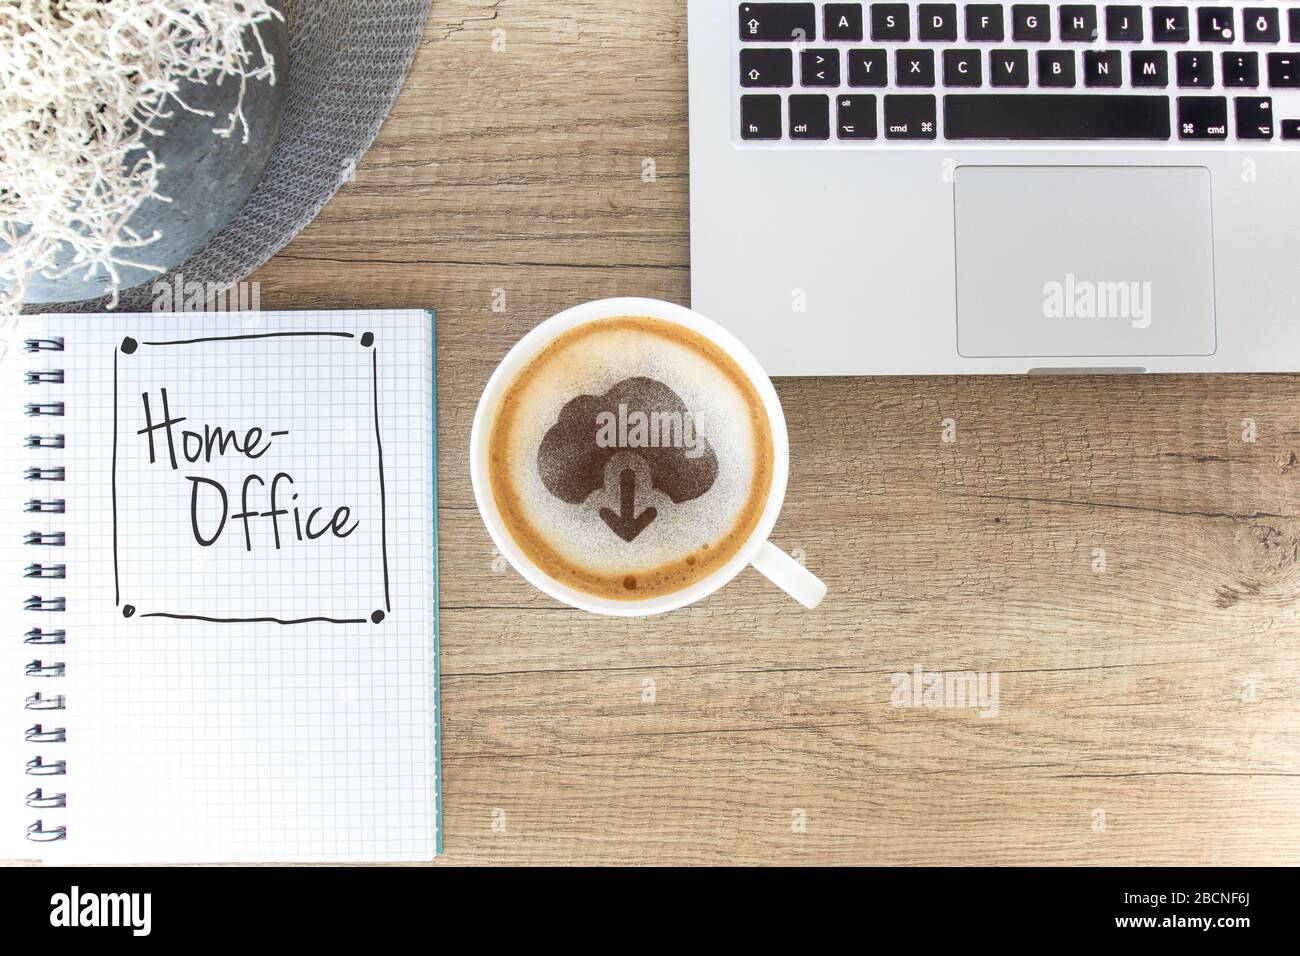 Tasse à café sur une table rustique avec icône de téléchargement Web, ordinateur portable et bloc-notes / espace de travail Homeoffice Banque D'Images